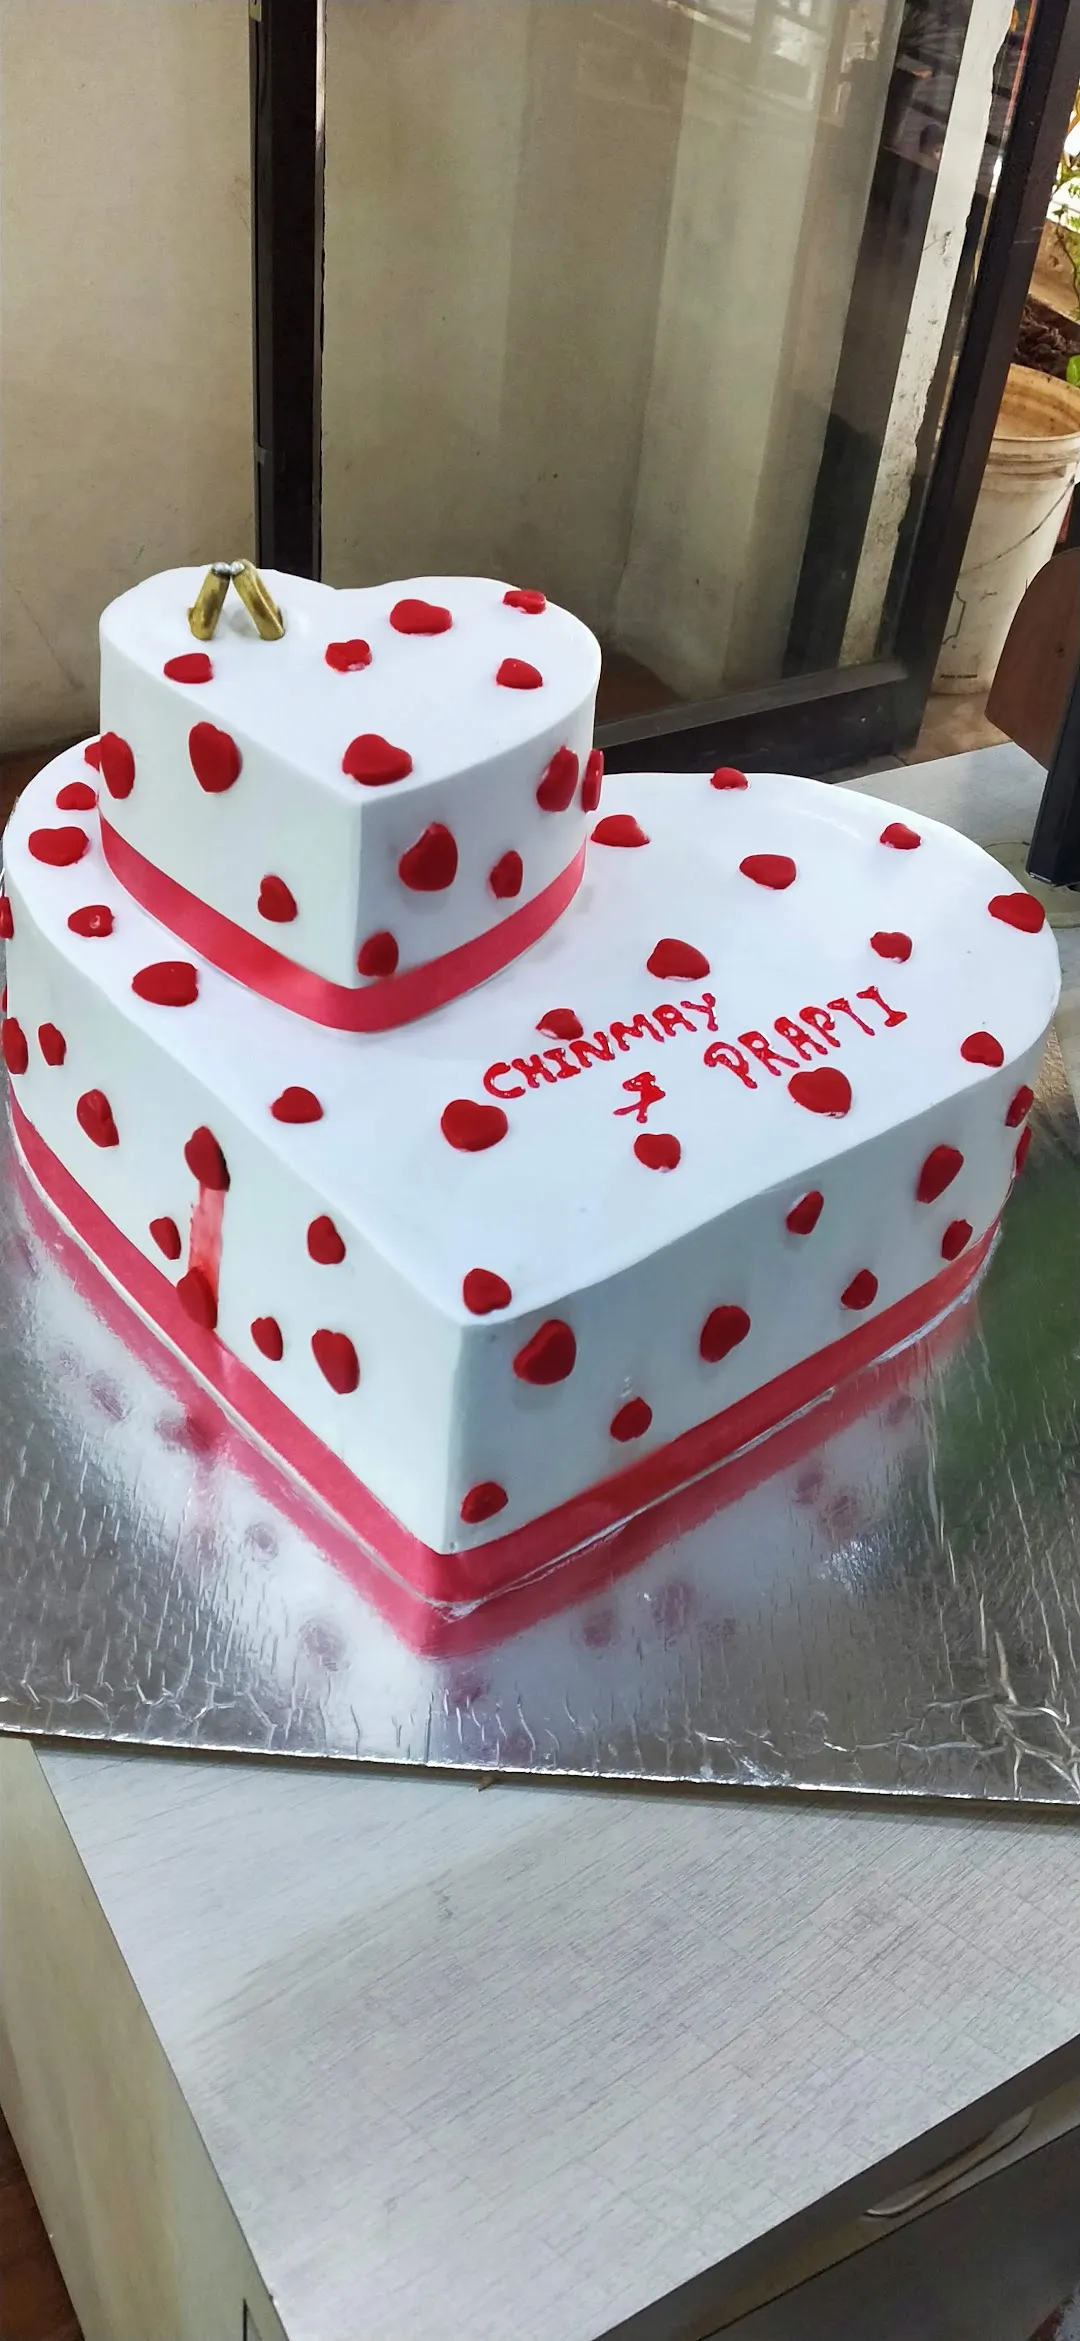 Cakes-away In Delhi | Order Online | Swiggy